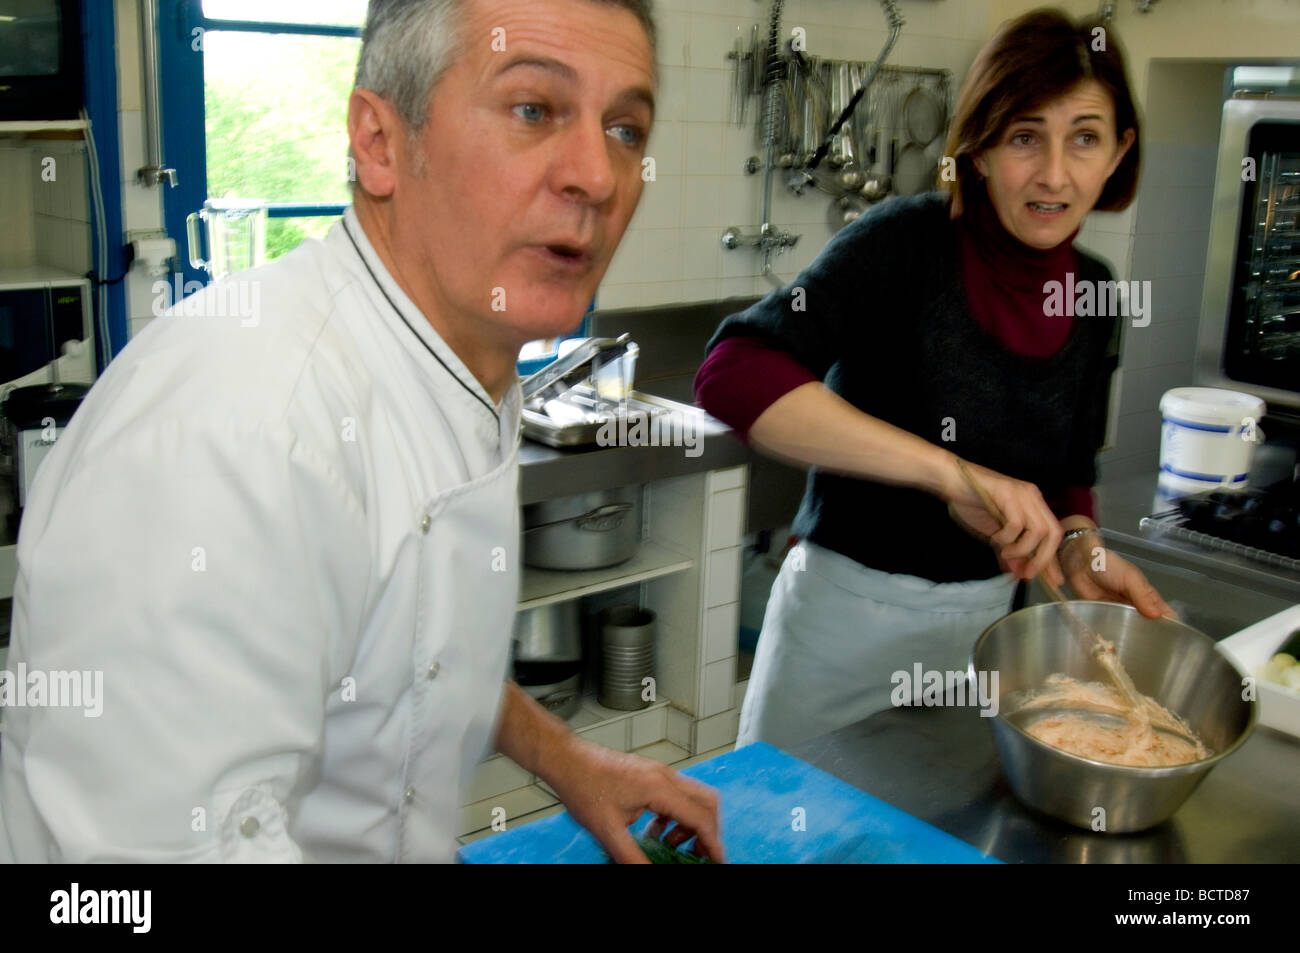 Chef Jacques Ratier et son épouse Noelle au travail dans l'kithcen de leur restaurant La Receration dans Les Arques France Banque D'Images